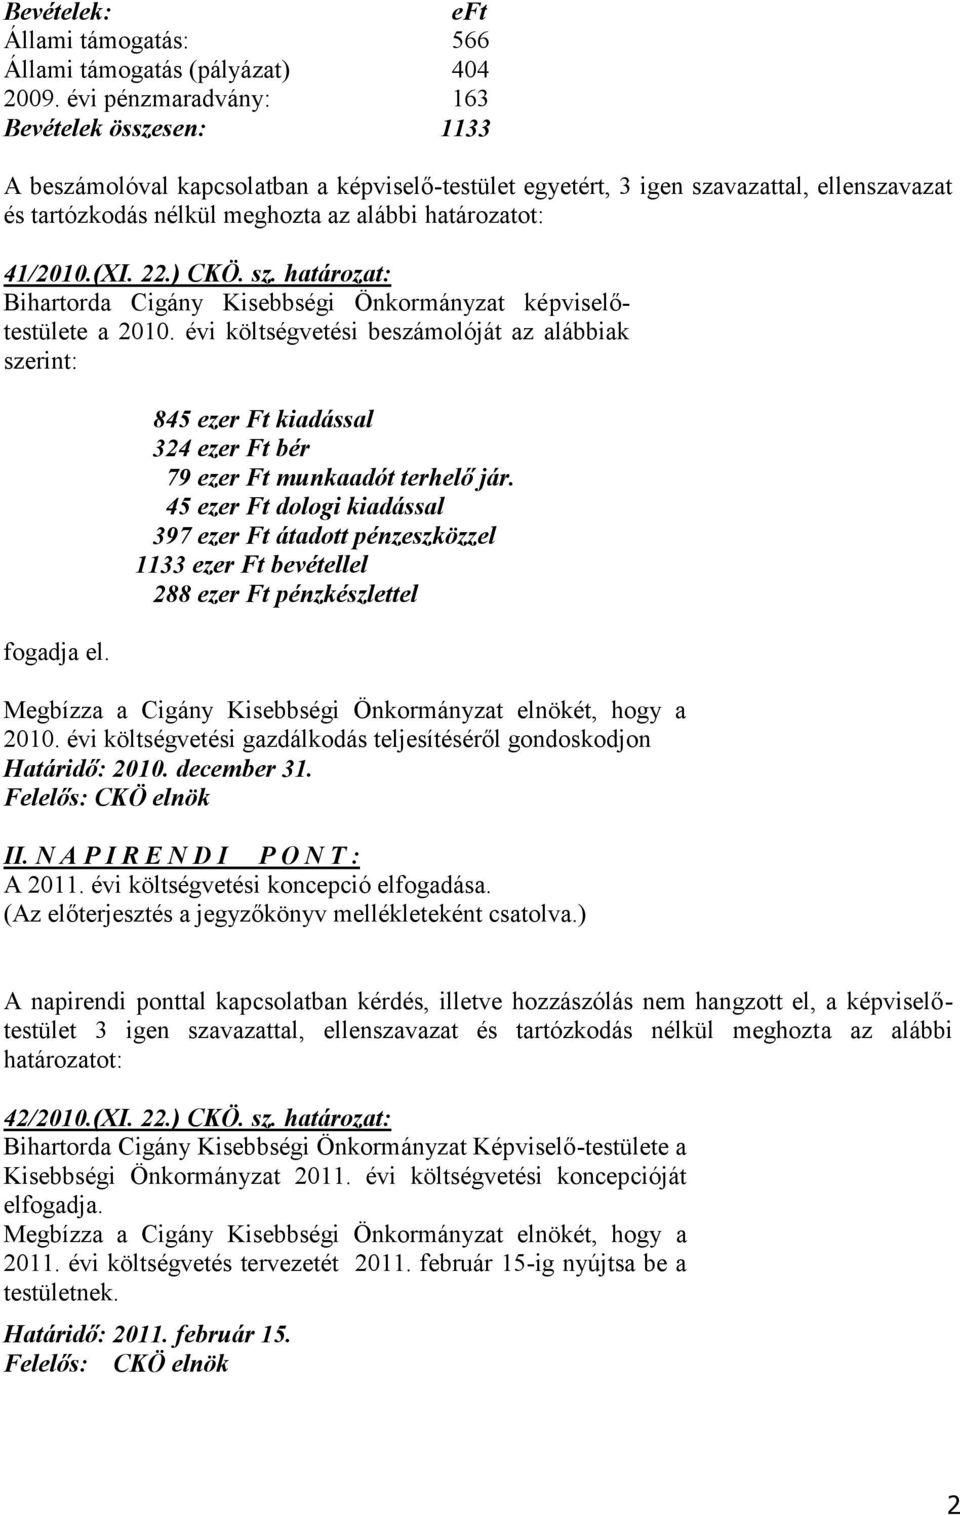 41/2010.(XI. 22.) CKÖ. sz. határozat: Bihartorda Cigány Kisebbségi Önkormányzat képviselőtestülete a 2010. évi költségvetési beszámolóját az alábbiak szerint: fogadja el.